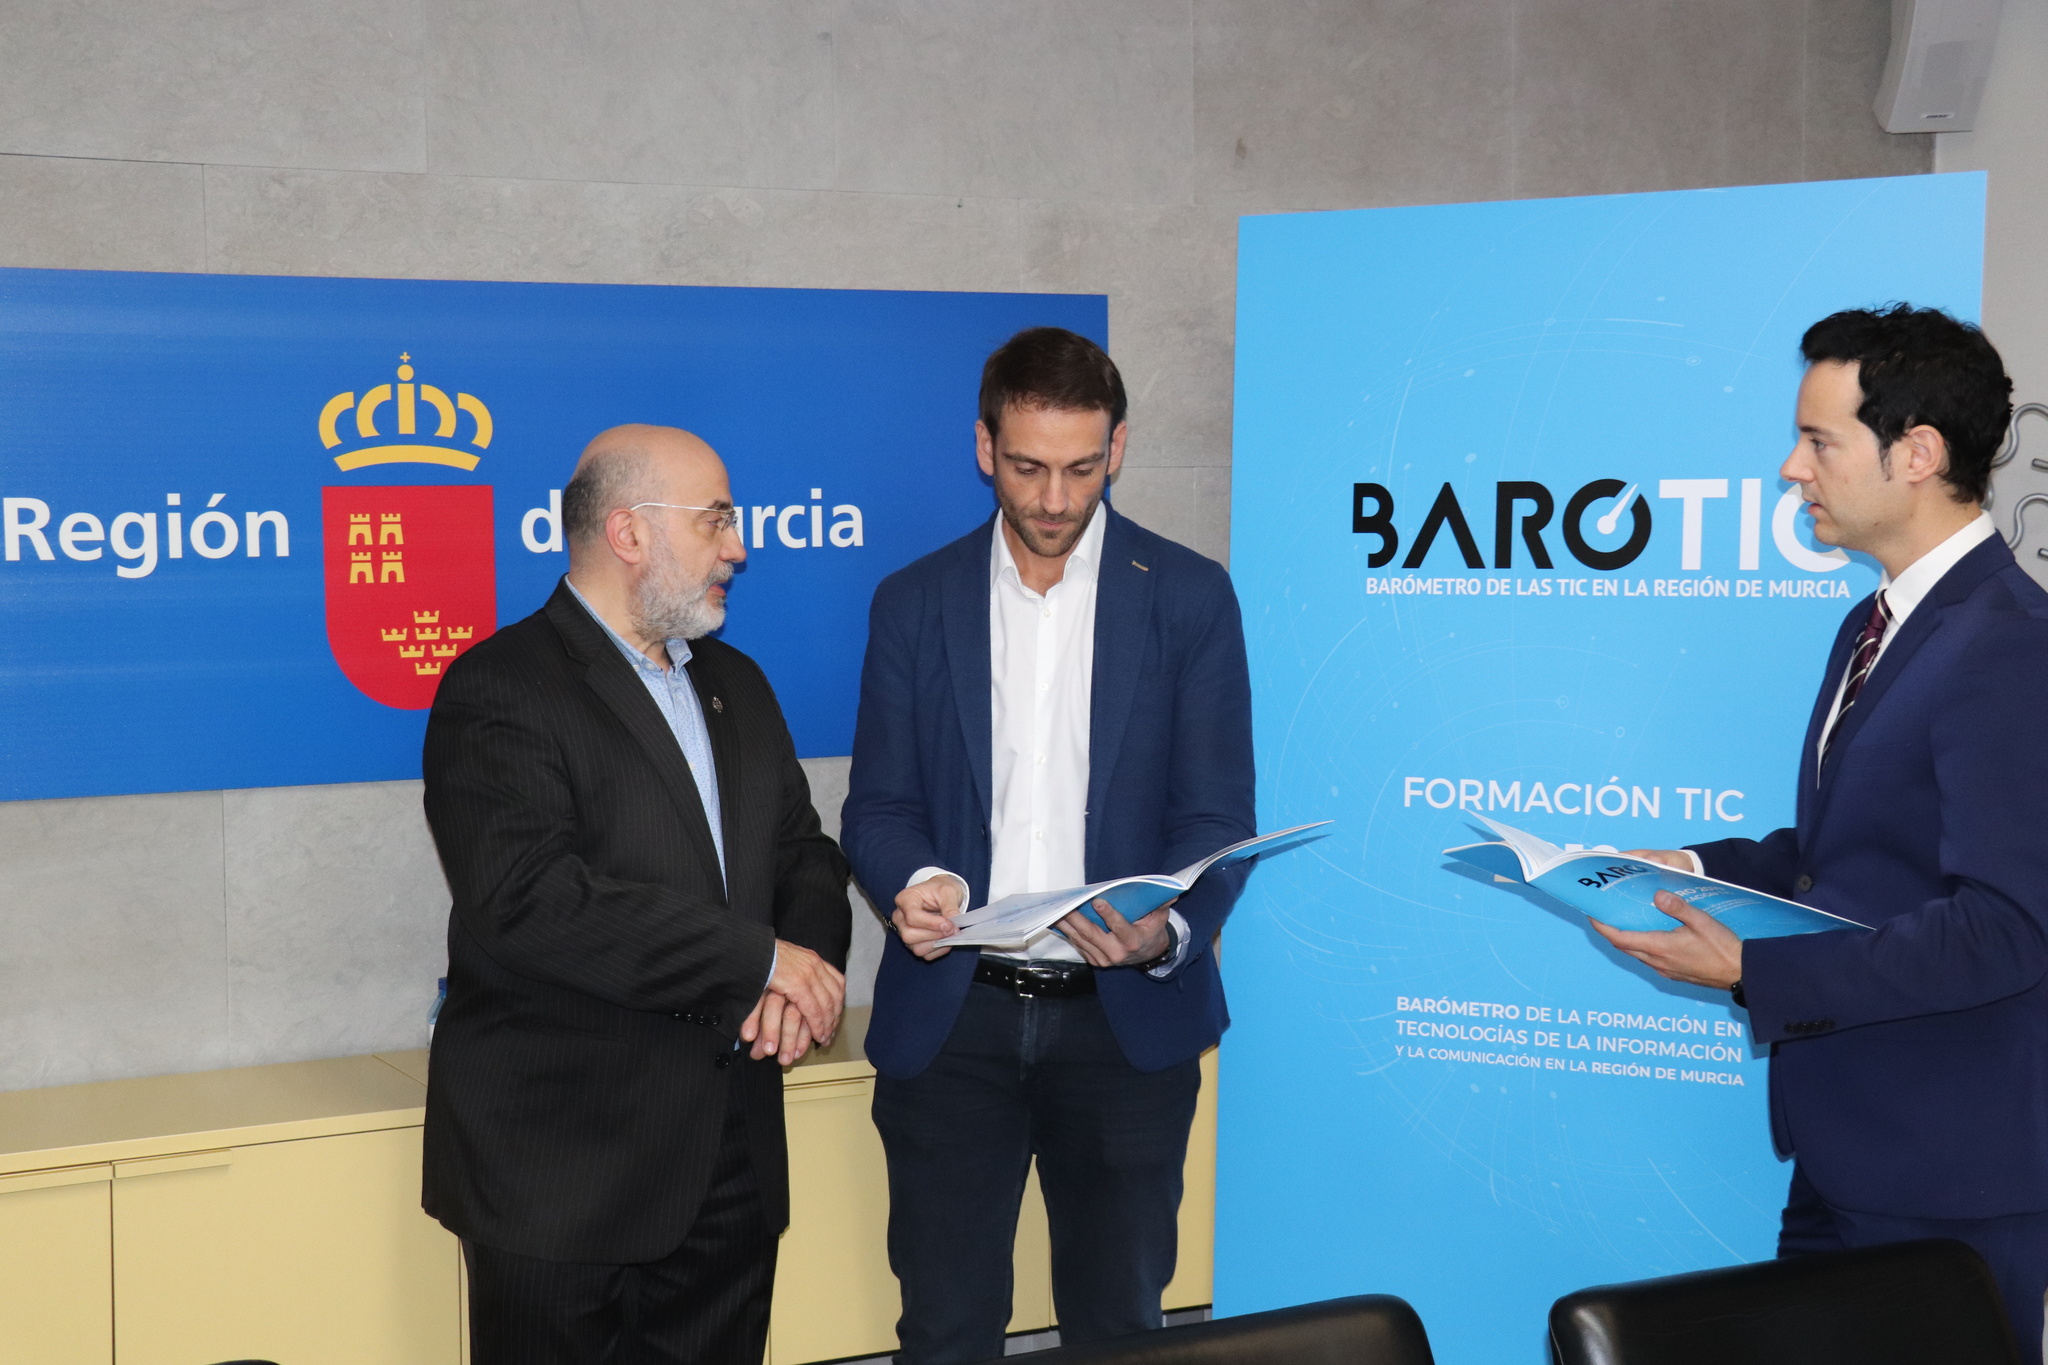 El director general de Informática, Patrimonio y Telecomunicaciones, Juan José Almela, presenta los resultados del Barotic